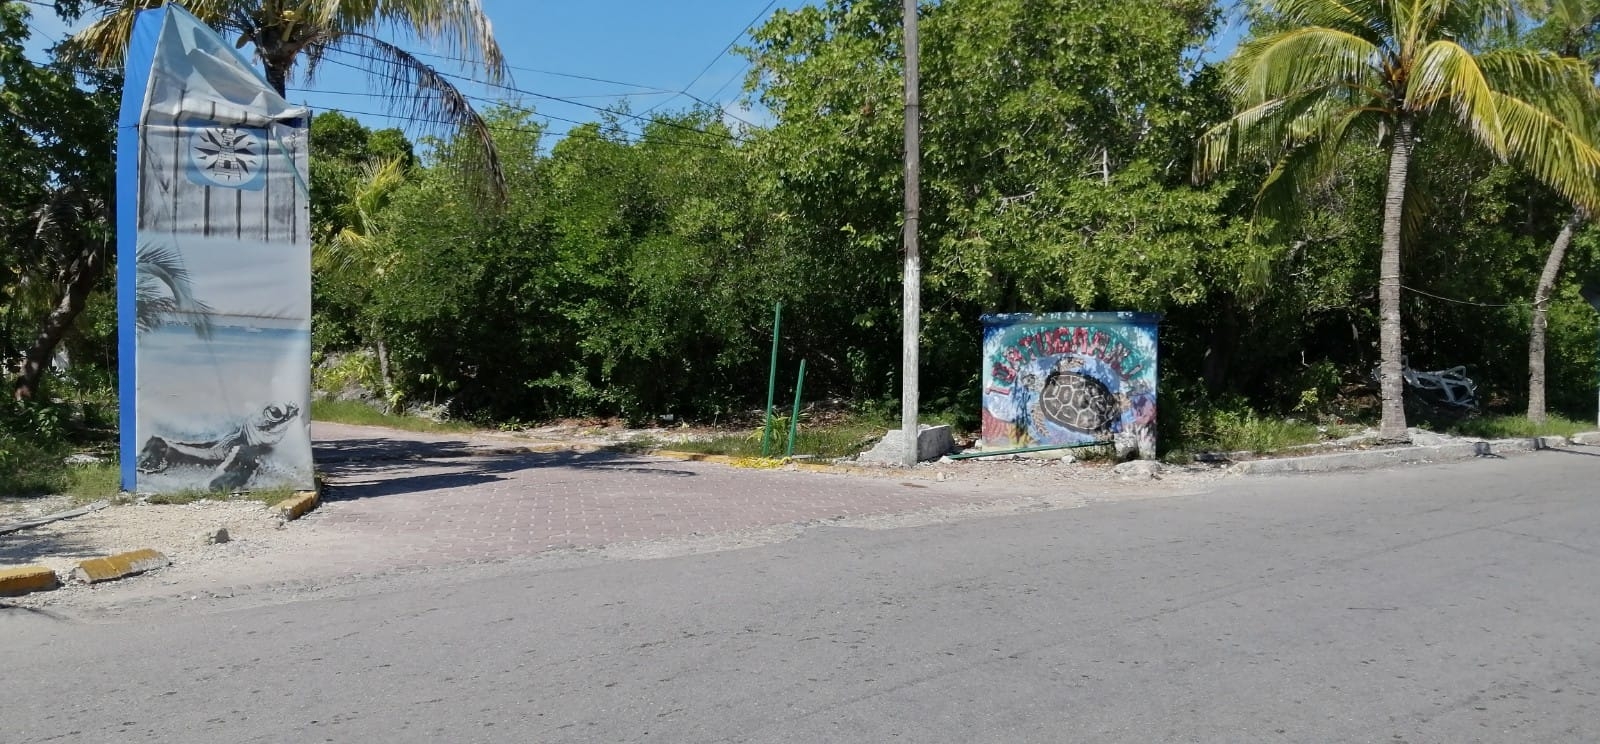 Cierra sus puertas la Tortugranja en Isla Mujeres, denuncian irregularidades